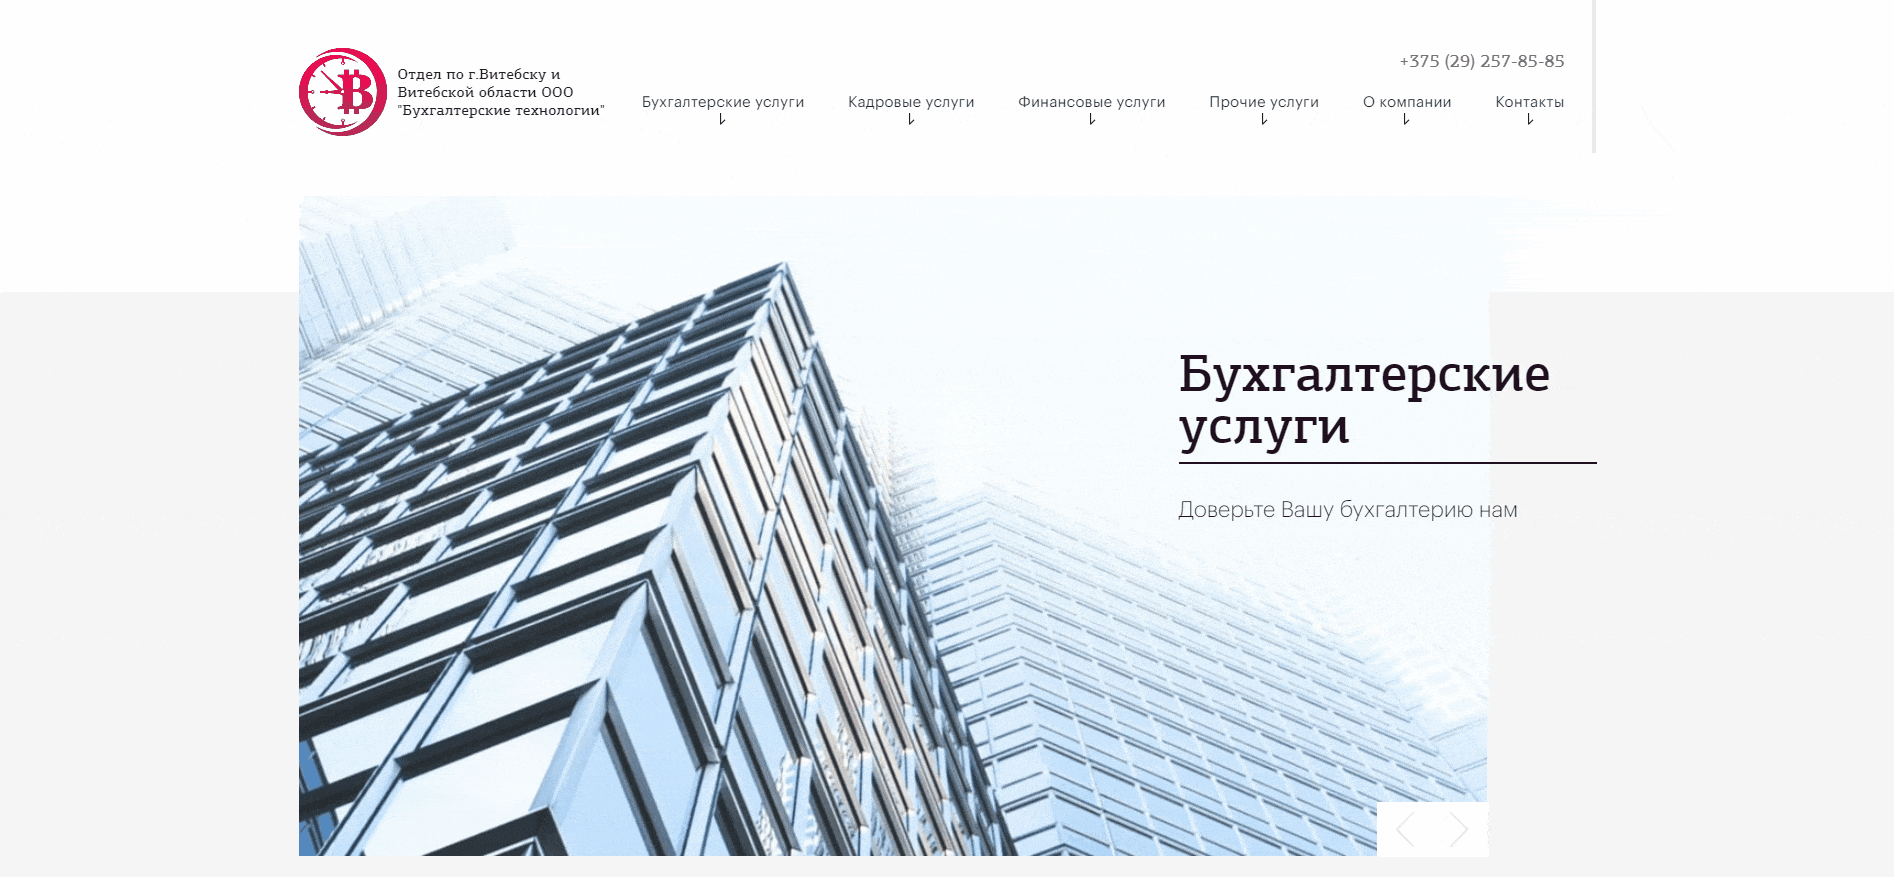 Создание сайта и разработка дизайна для отдела по г. Витебску бухгалтерской компании